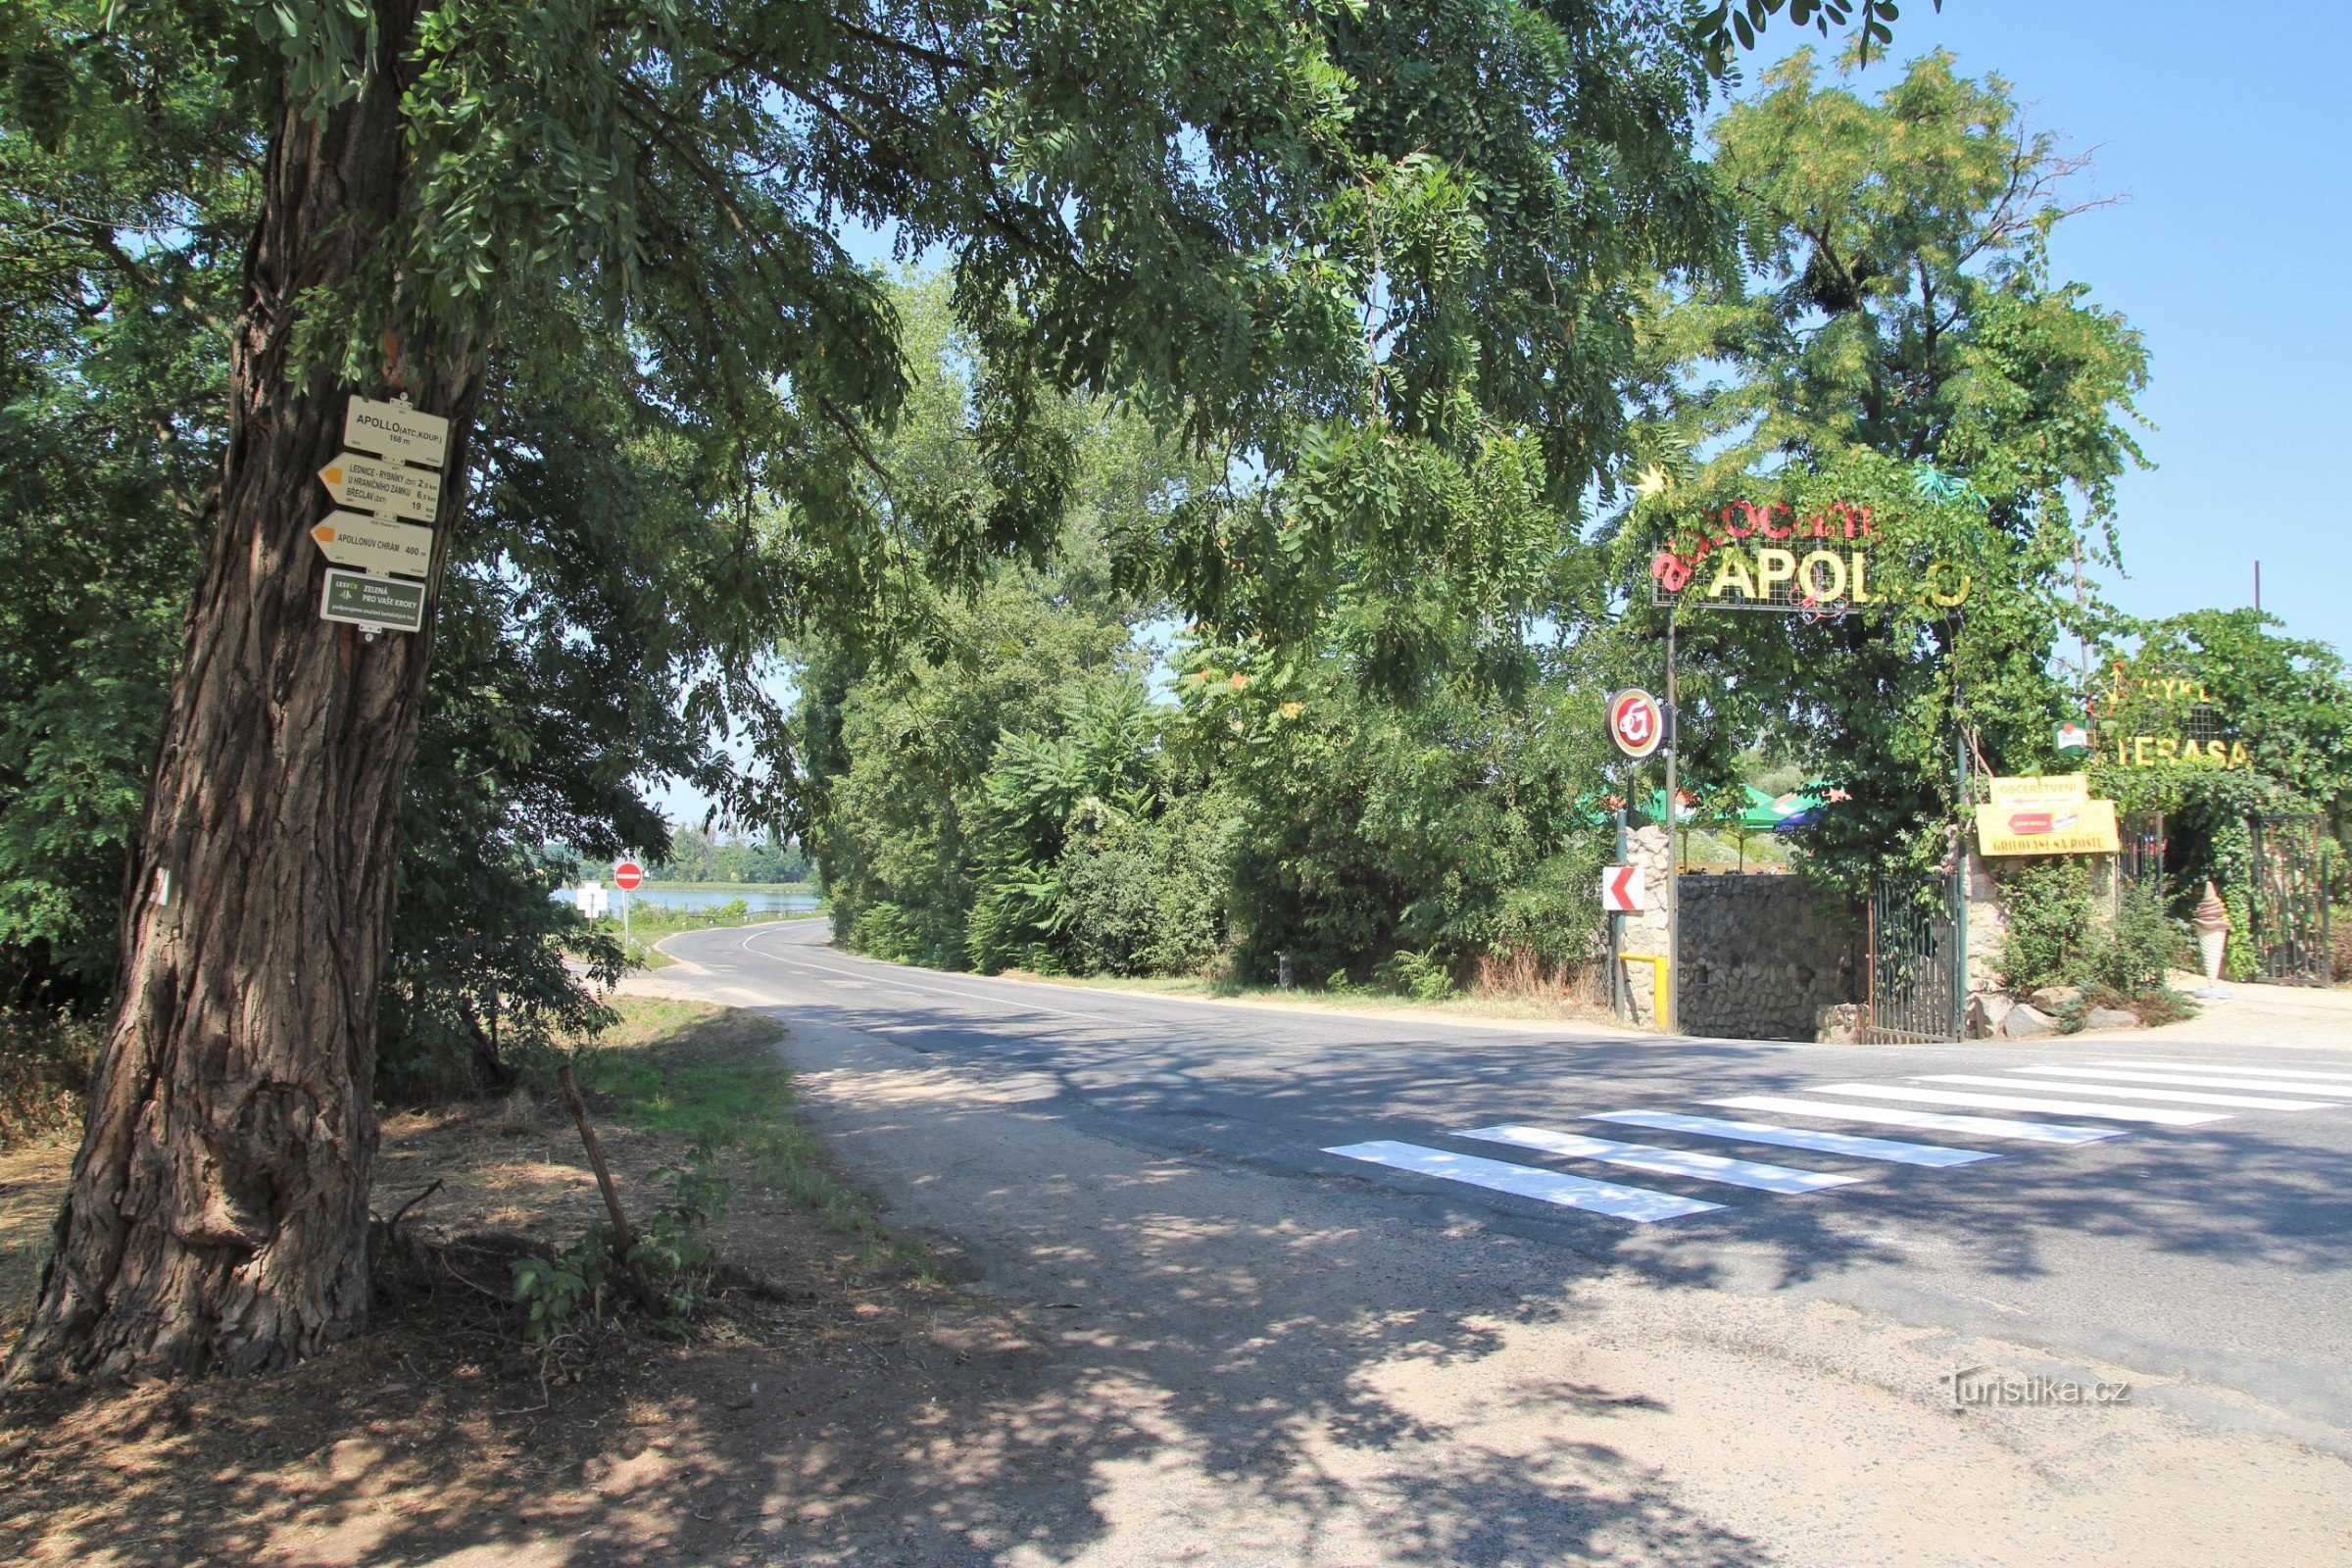 Az Apollo turisztikai csomópont az azonos nevű tábor bejáratával szemben található